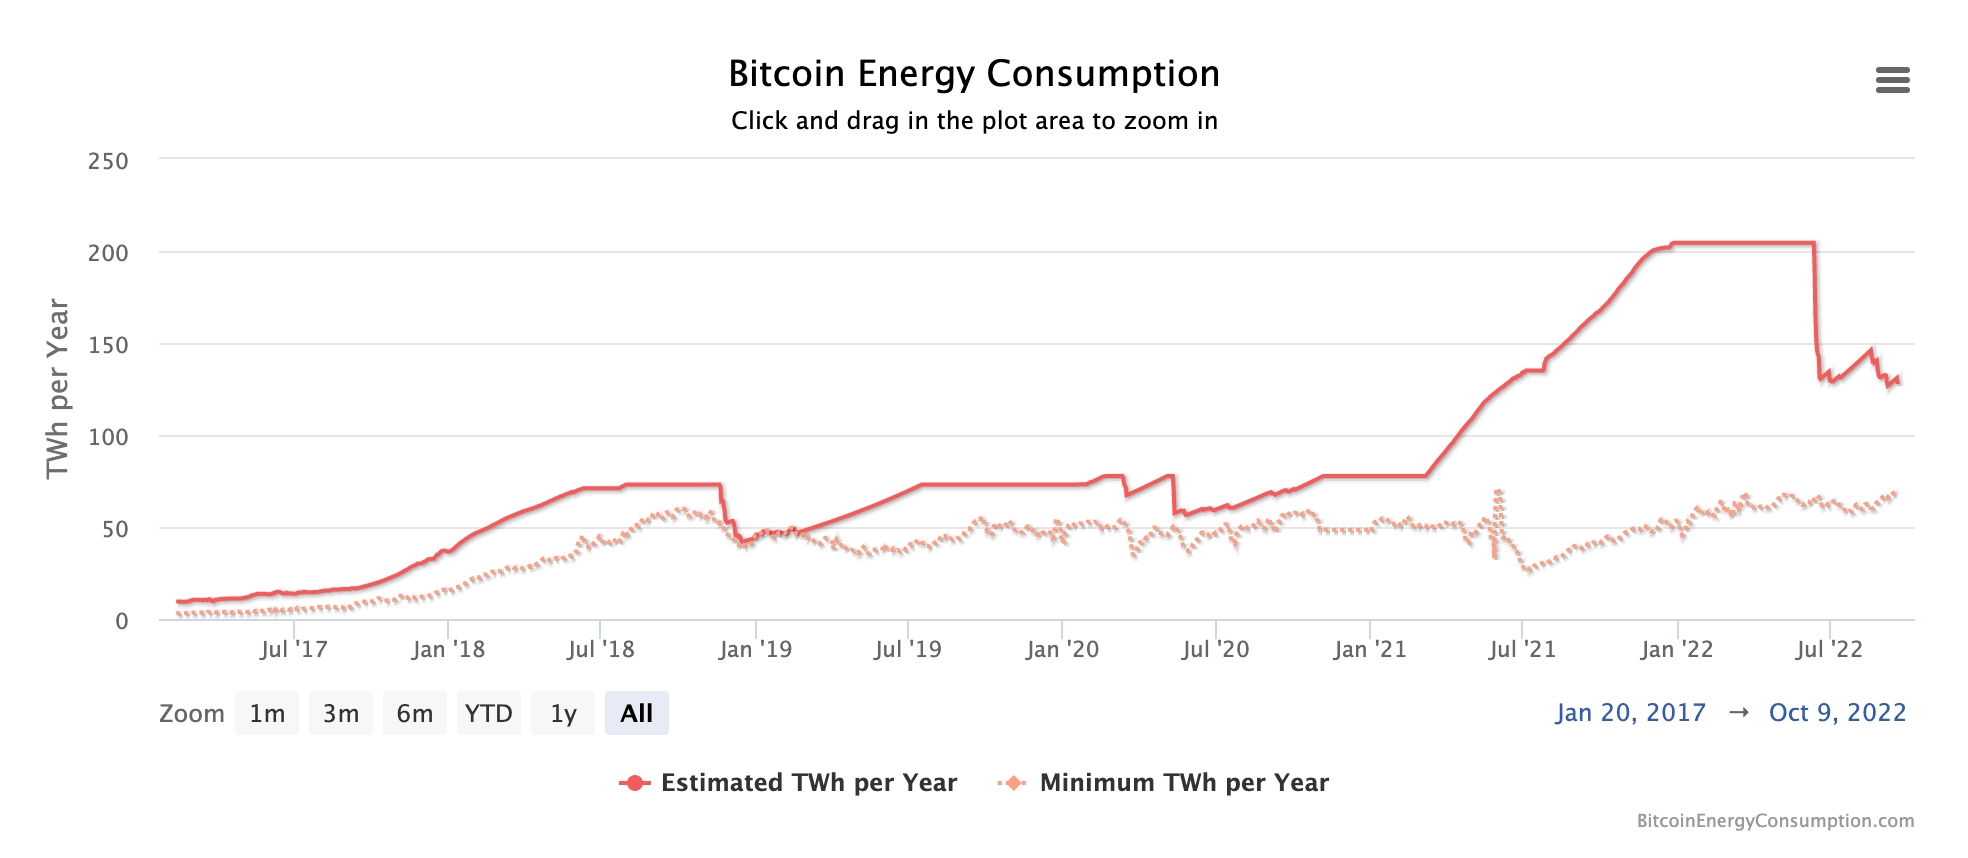 Bitcoin energy consumption